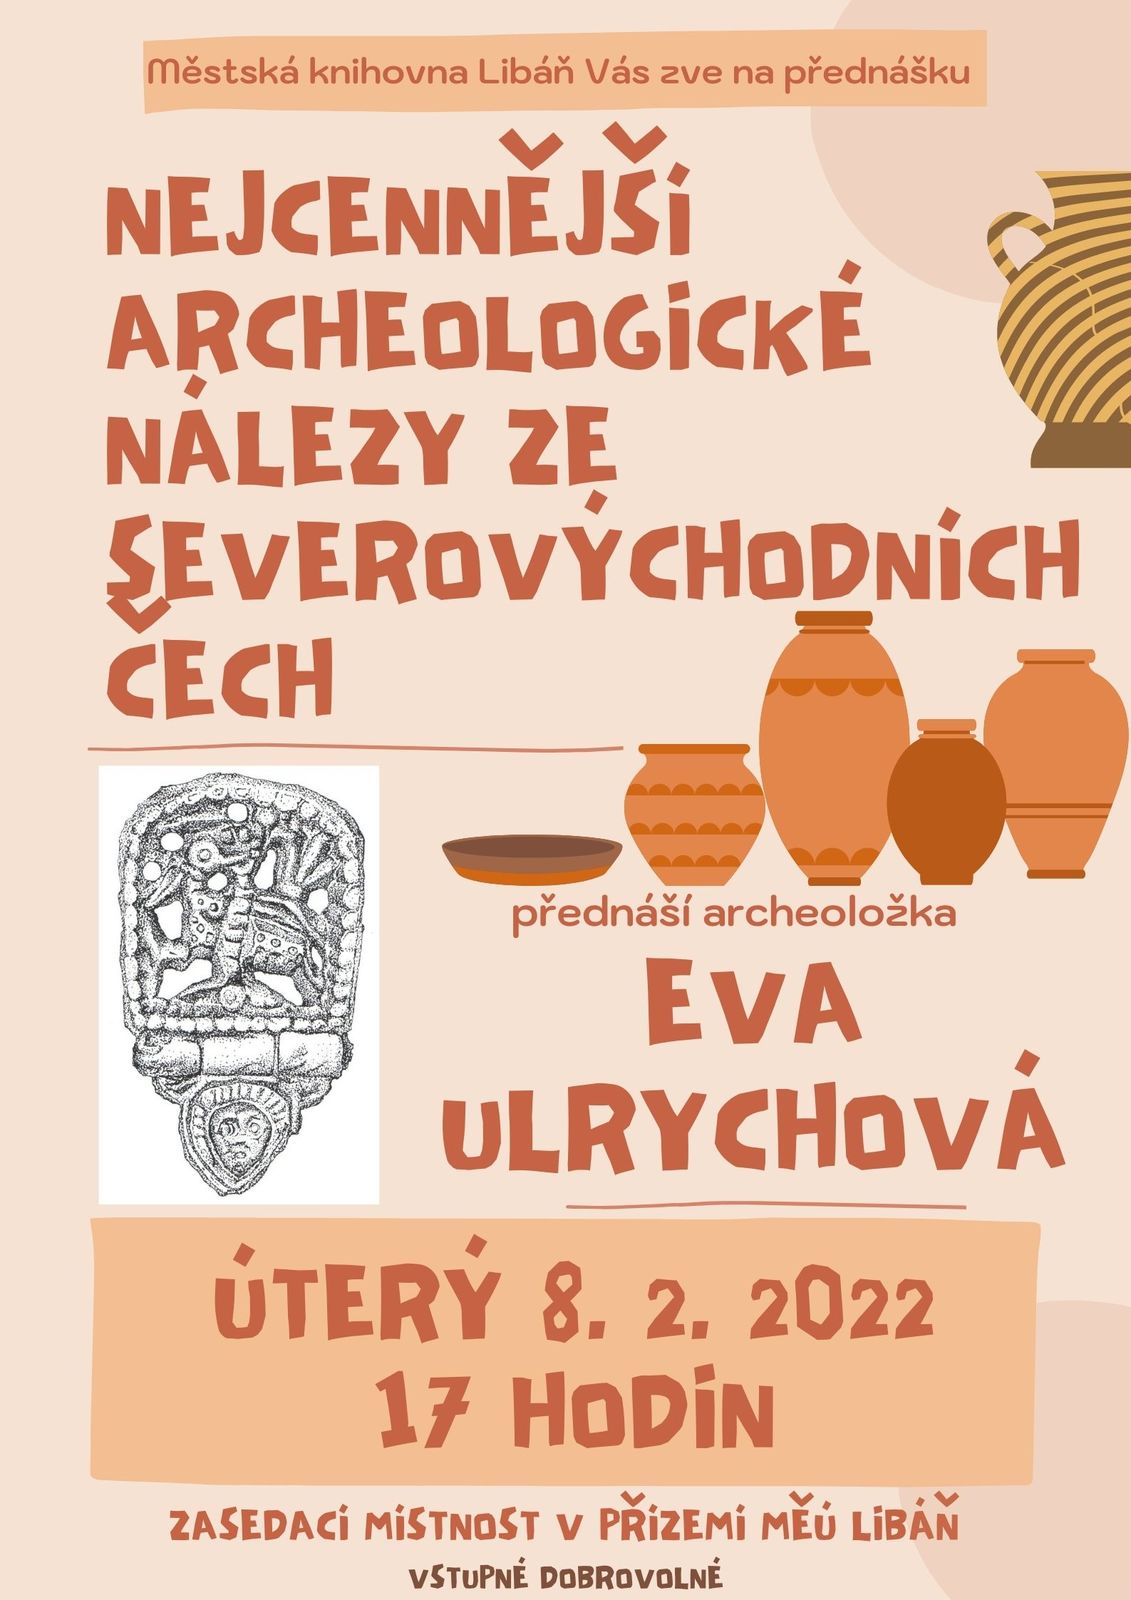 Ulrychova_archeologické nálezy vychodnich Cech.jpg